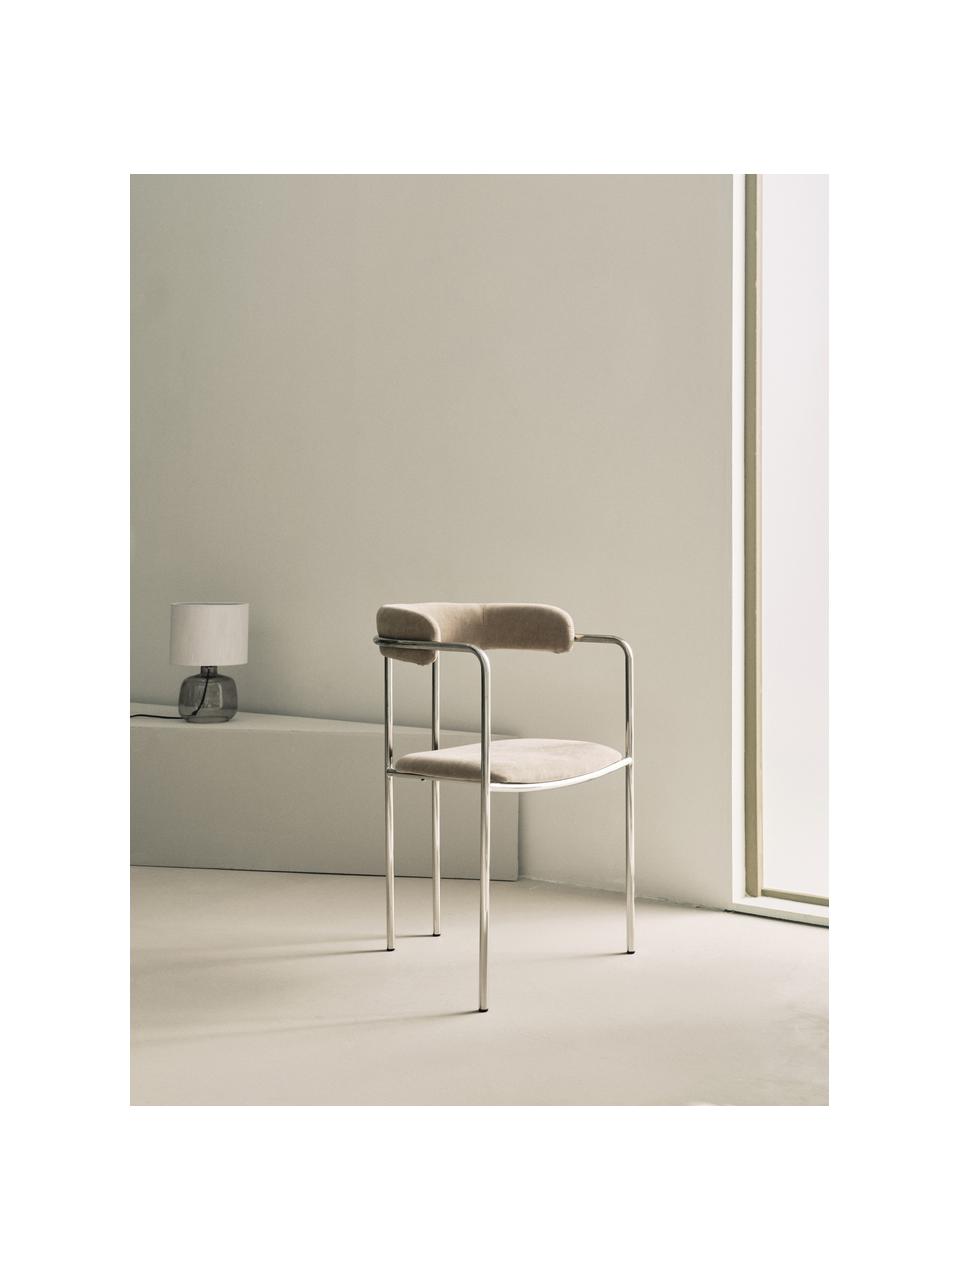 Krzesło tapicerowane Maryland, Tapicerka: 100% poliester Dzięki tka, Stelaż: metal malowany proszkowo, Beżowa tkanina, odcienie srebrnego, S 54 x G 49 cm